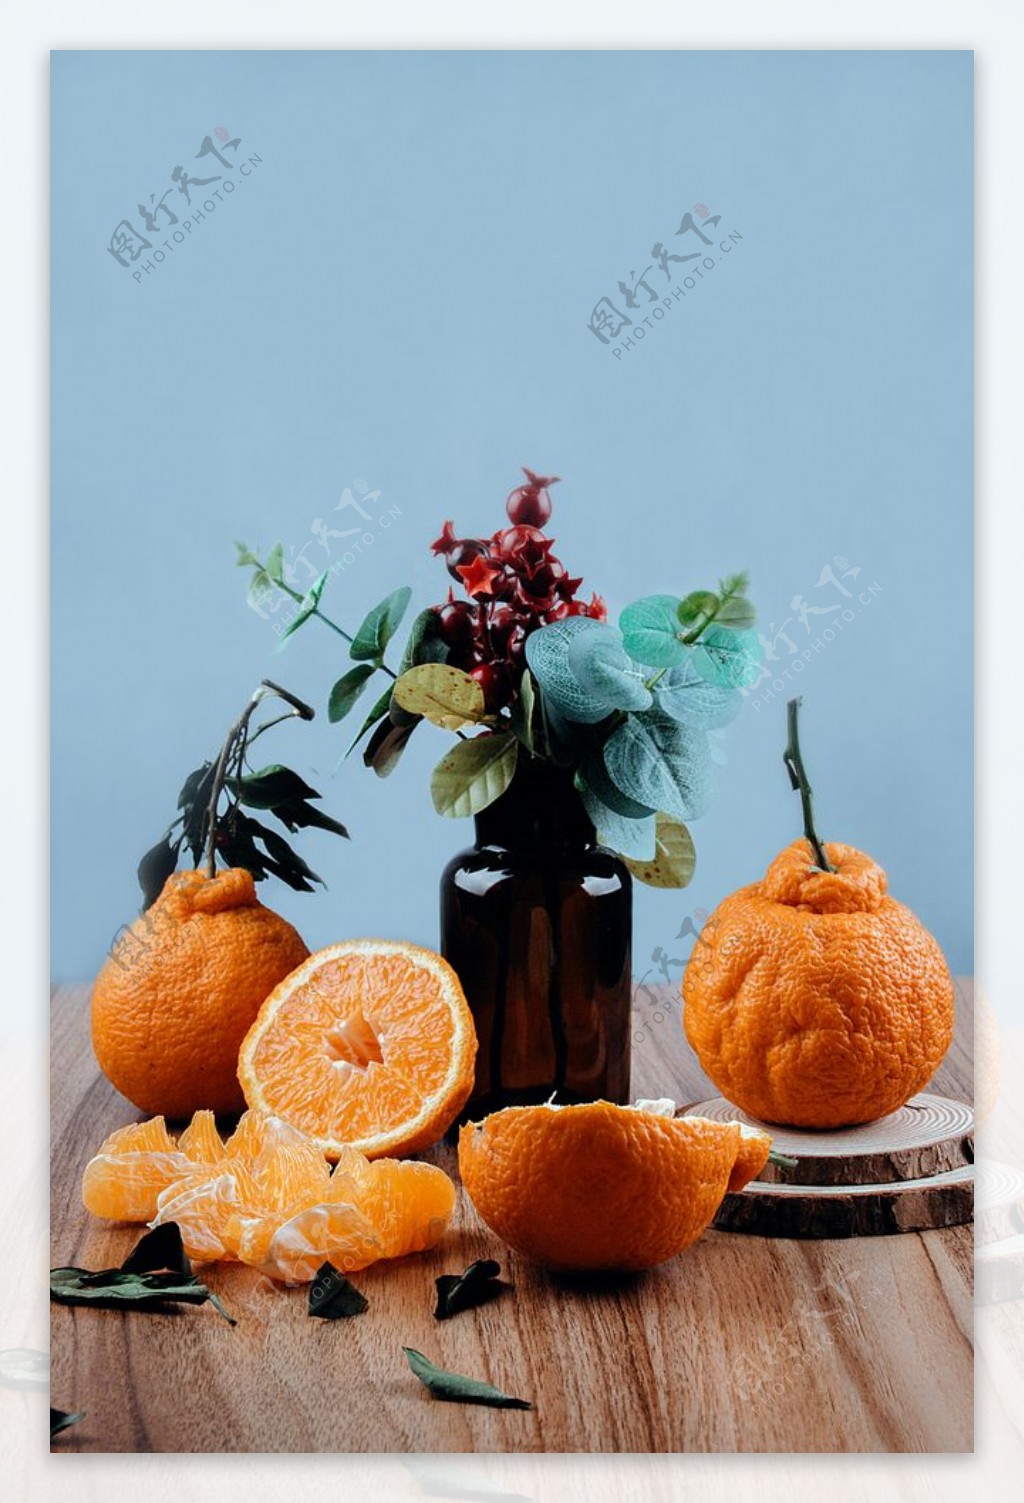 丑橘水果果实背景海报素材图片